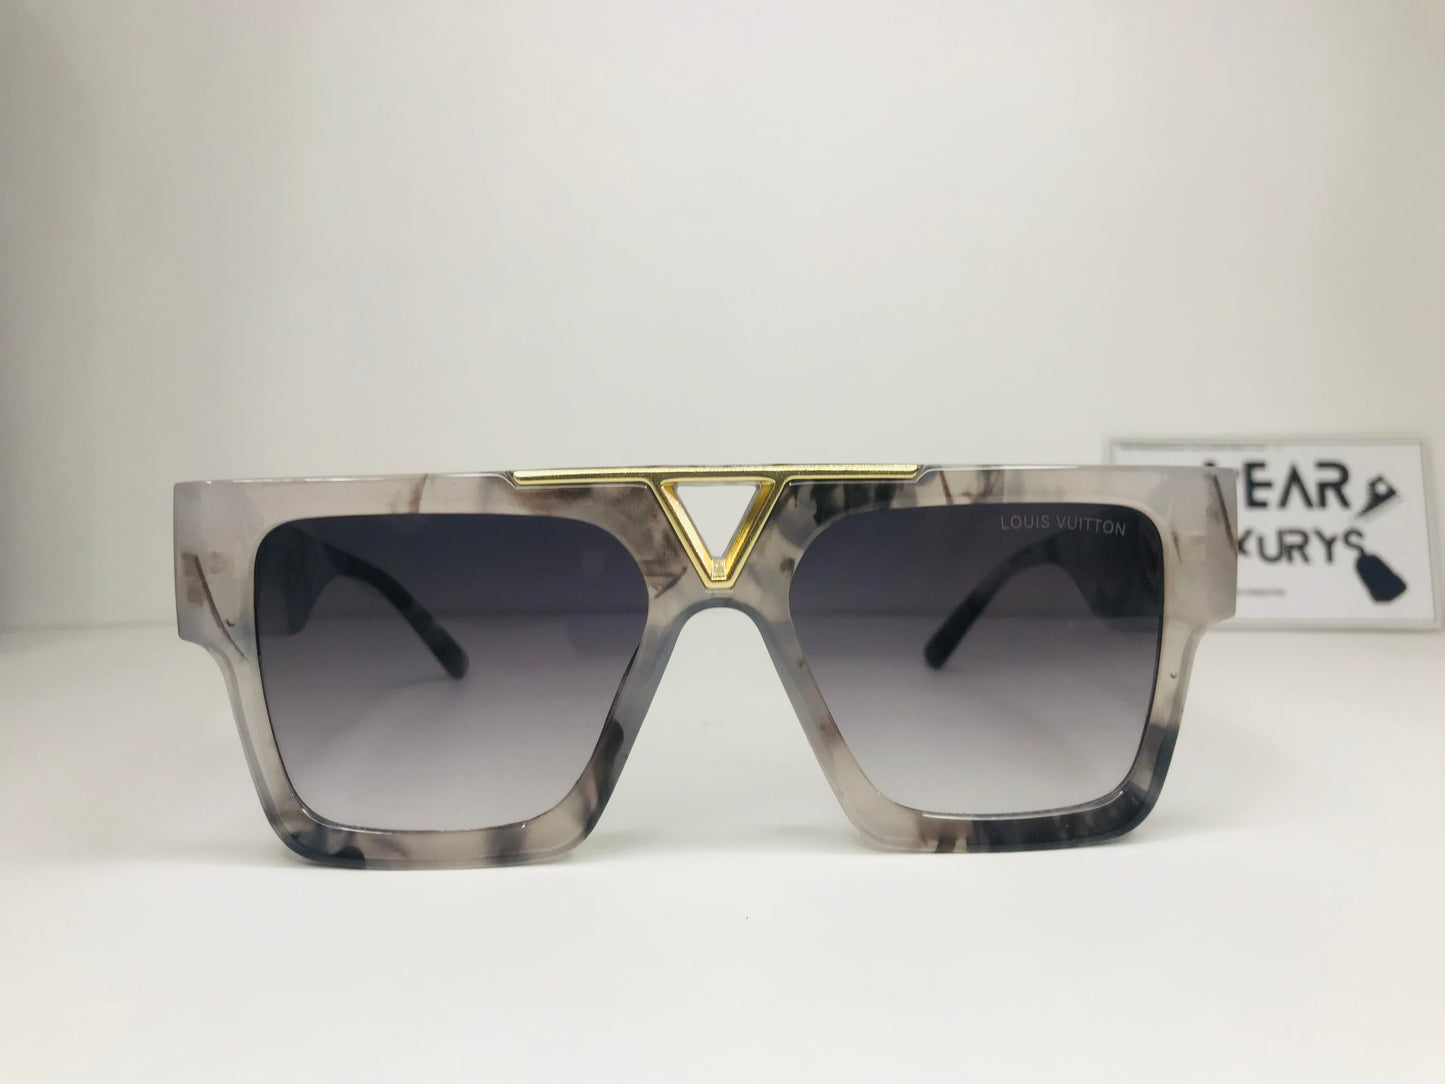 Lv newest sunglasses - WEARLUXURYSWEARLUXURYSnull